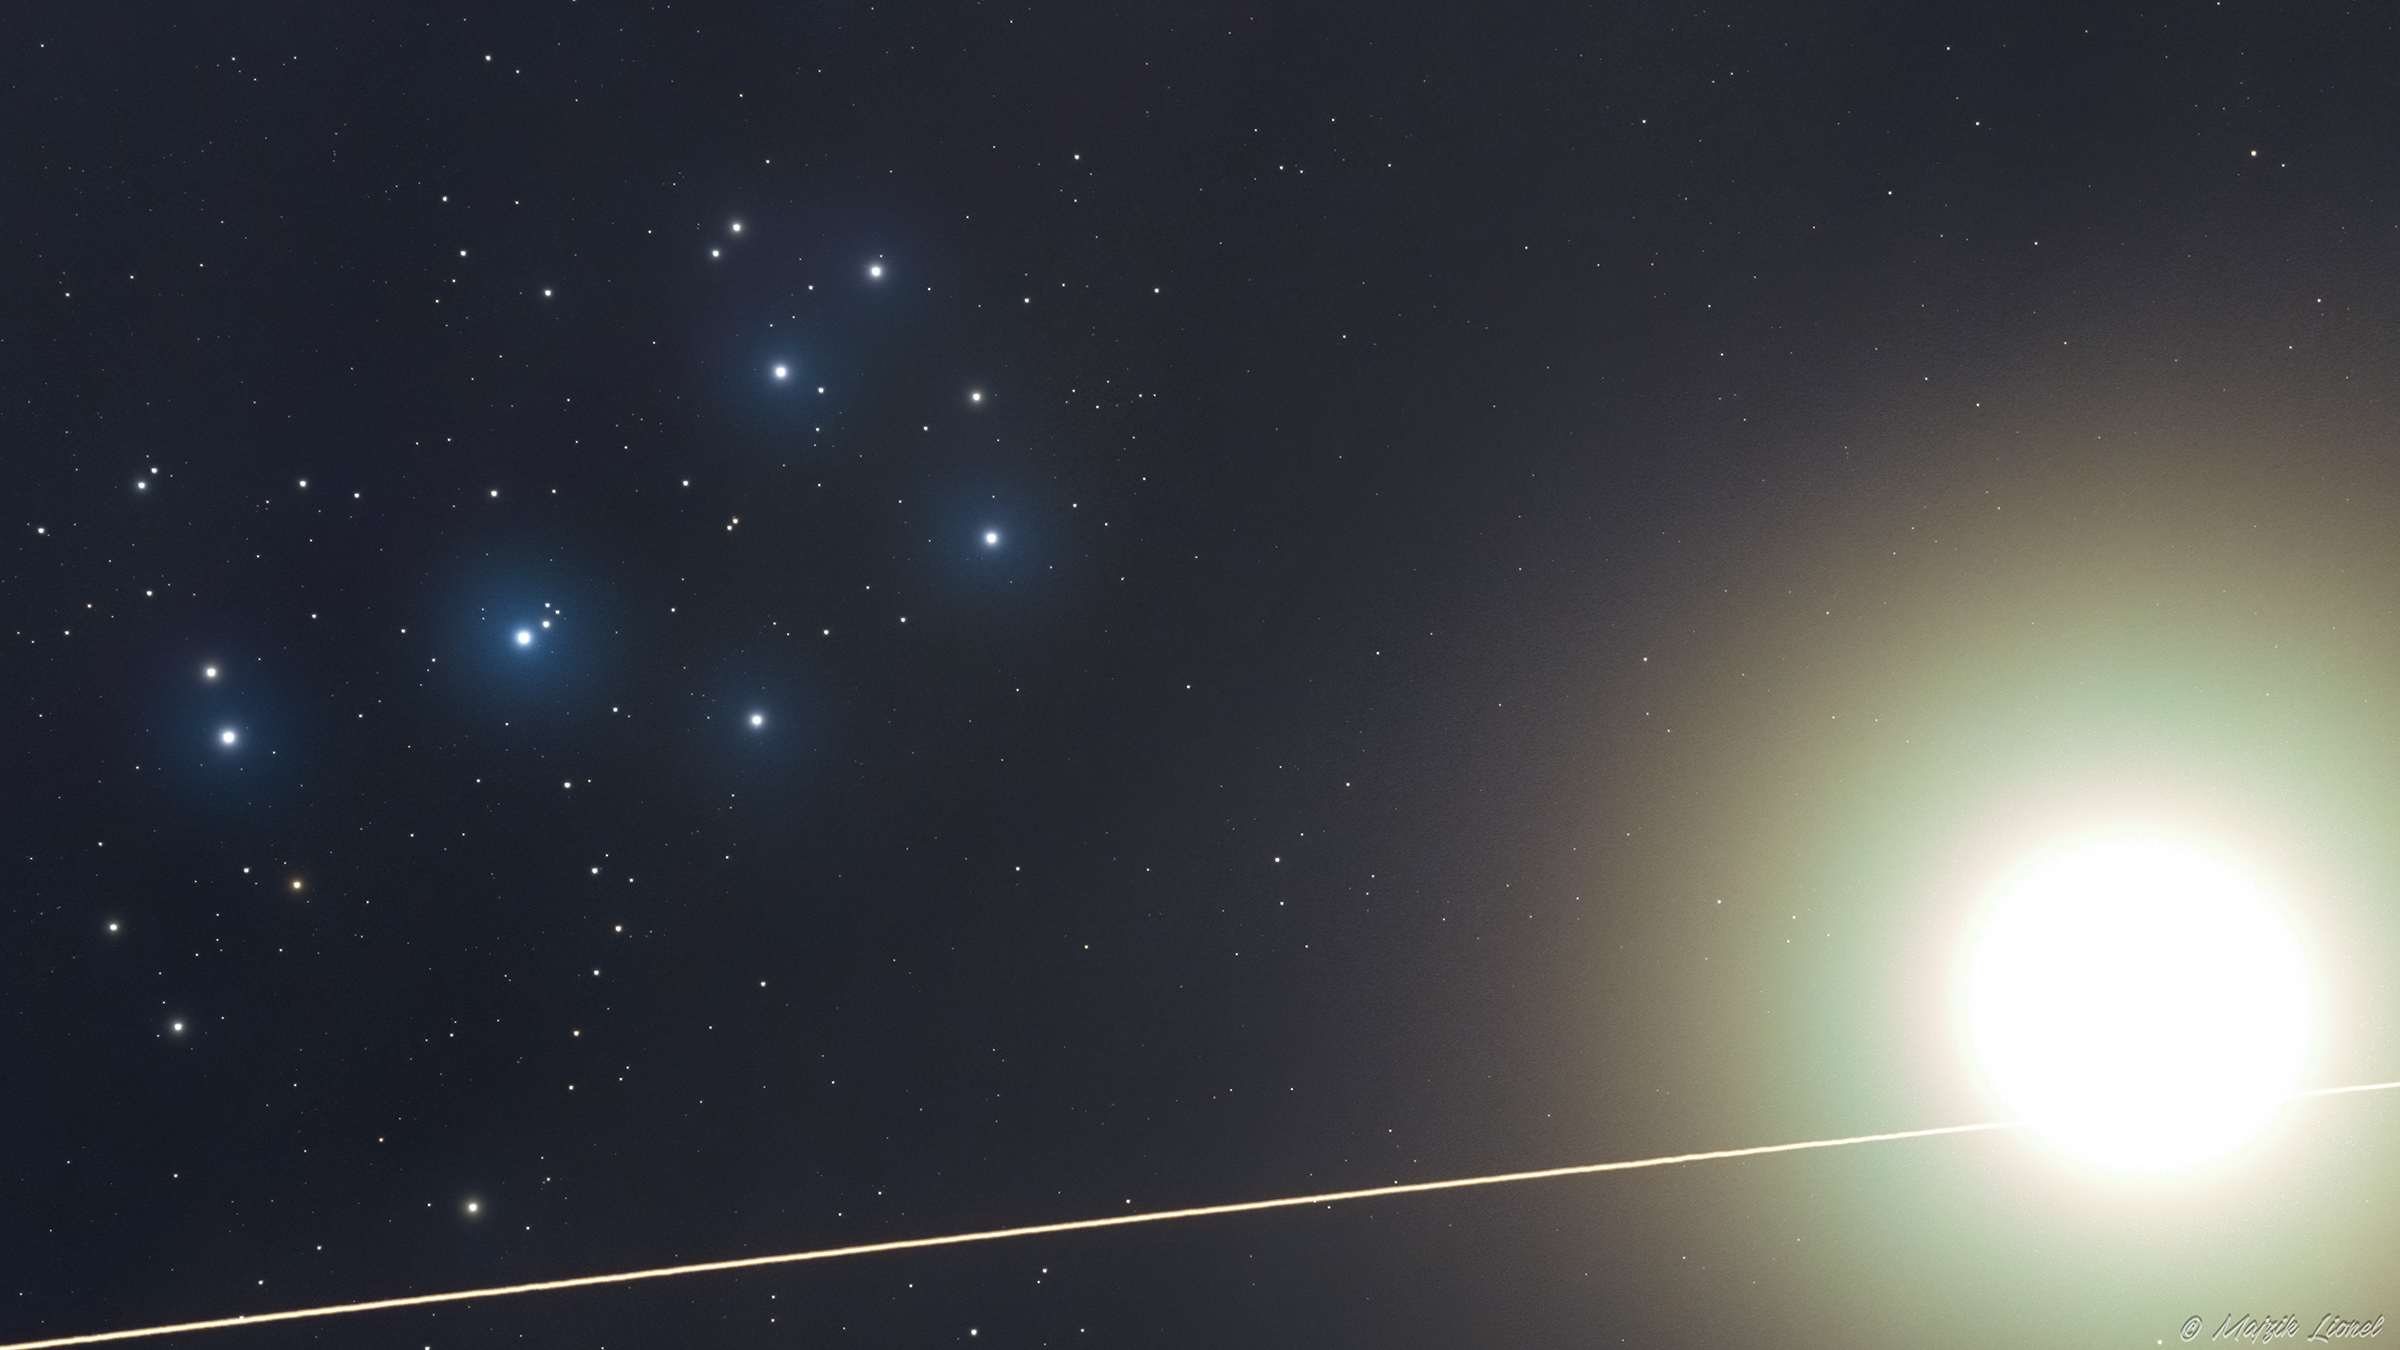 Stau im Stier - Venus und die Internationale Raumstation ISS beim Sternhaufen der Plejaden; Ein Klick auf das Bild lädt die höchstaufgelöste verfügbare Version.